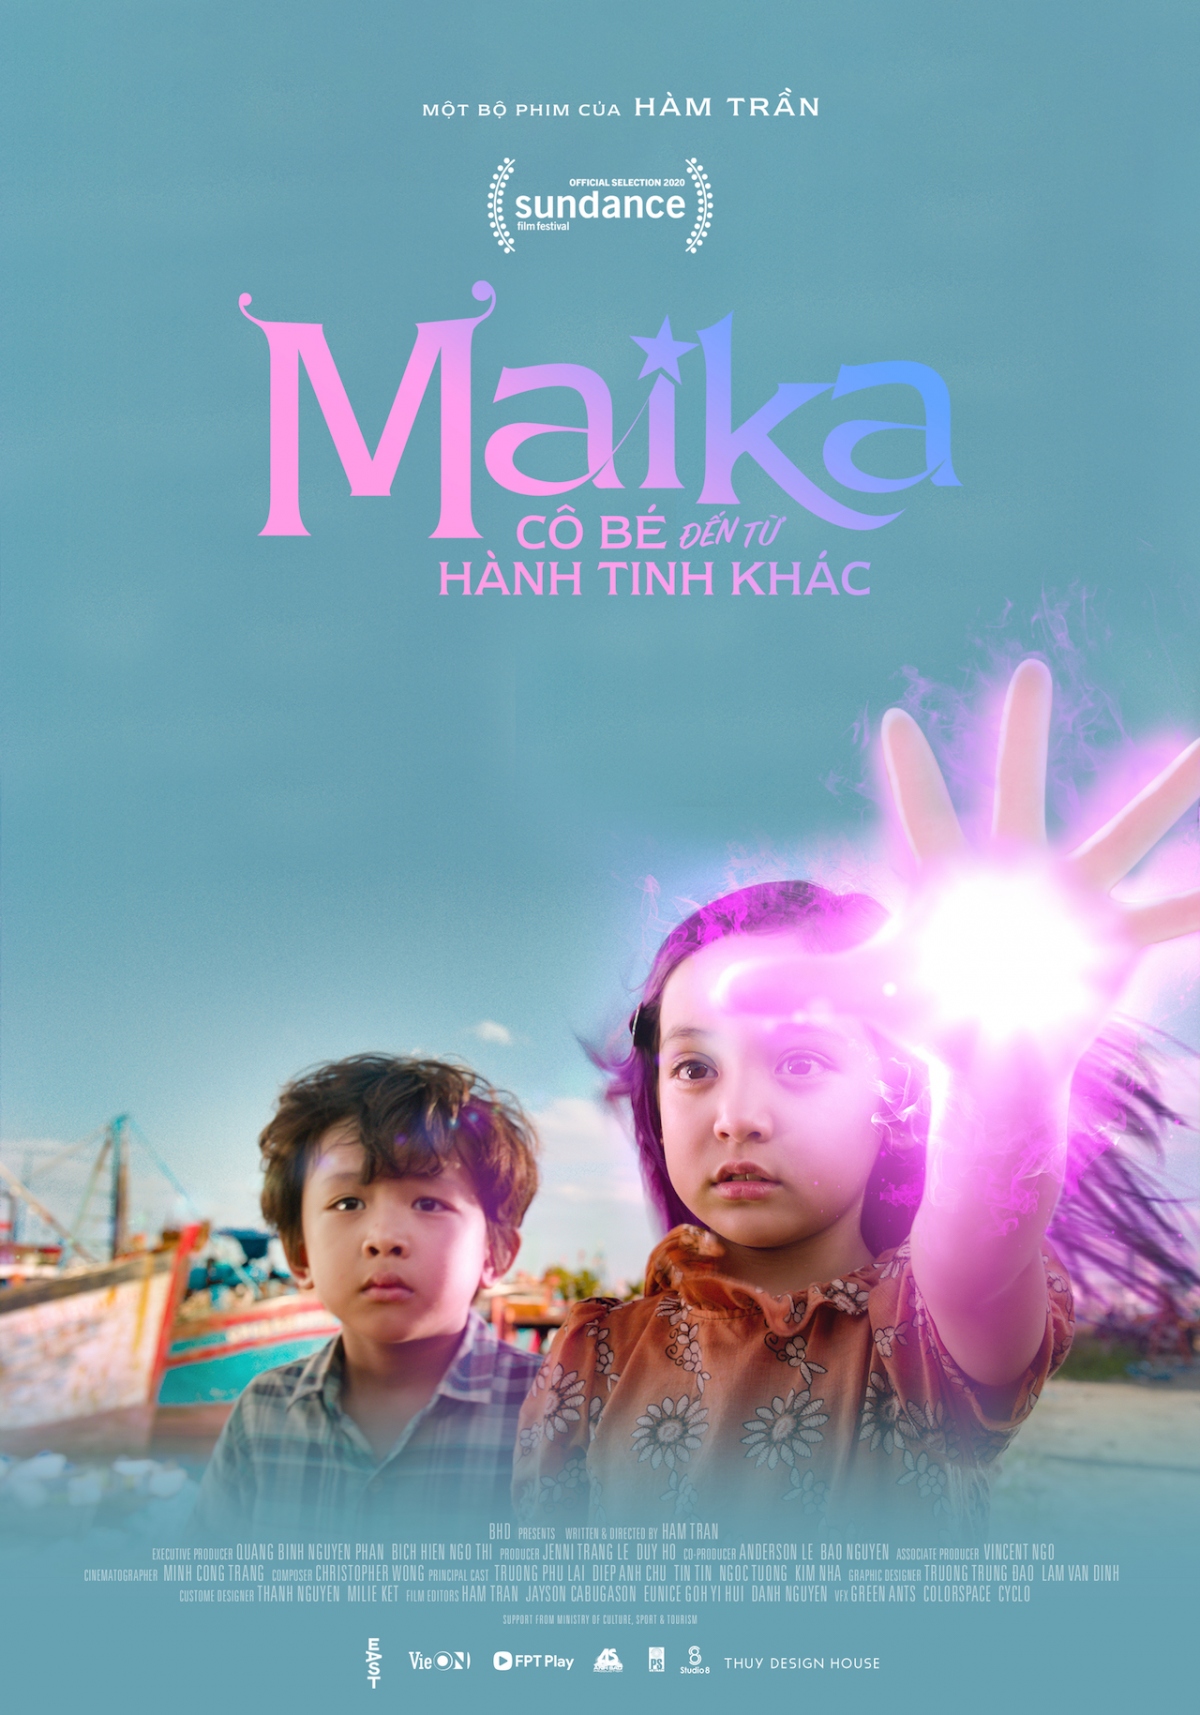 Đạo diễn “Maika” Hàm Trần: Tôi mong bộ phim của mình chạm được tới khán giả